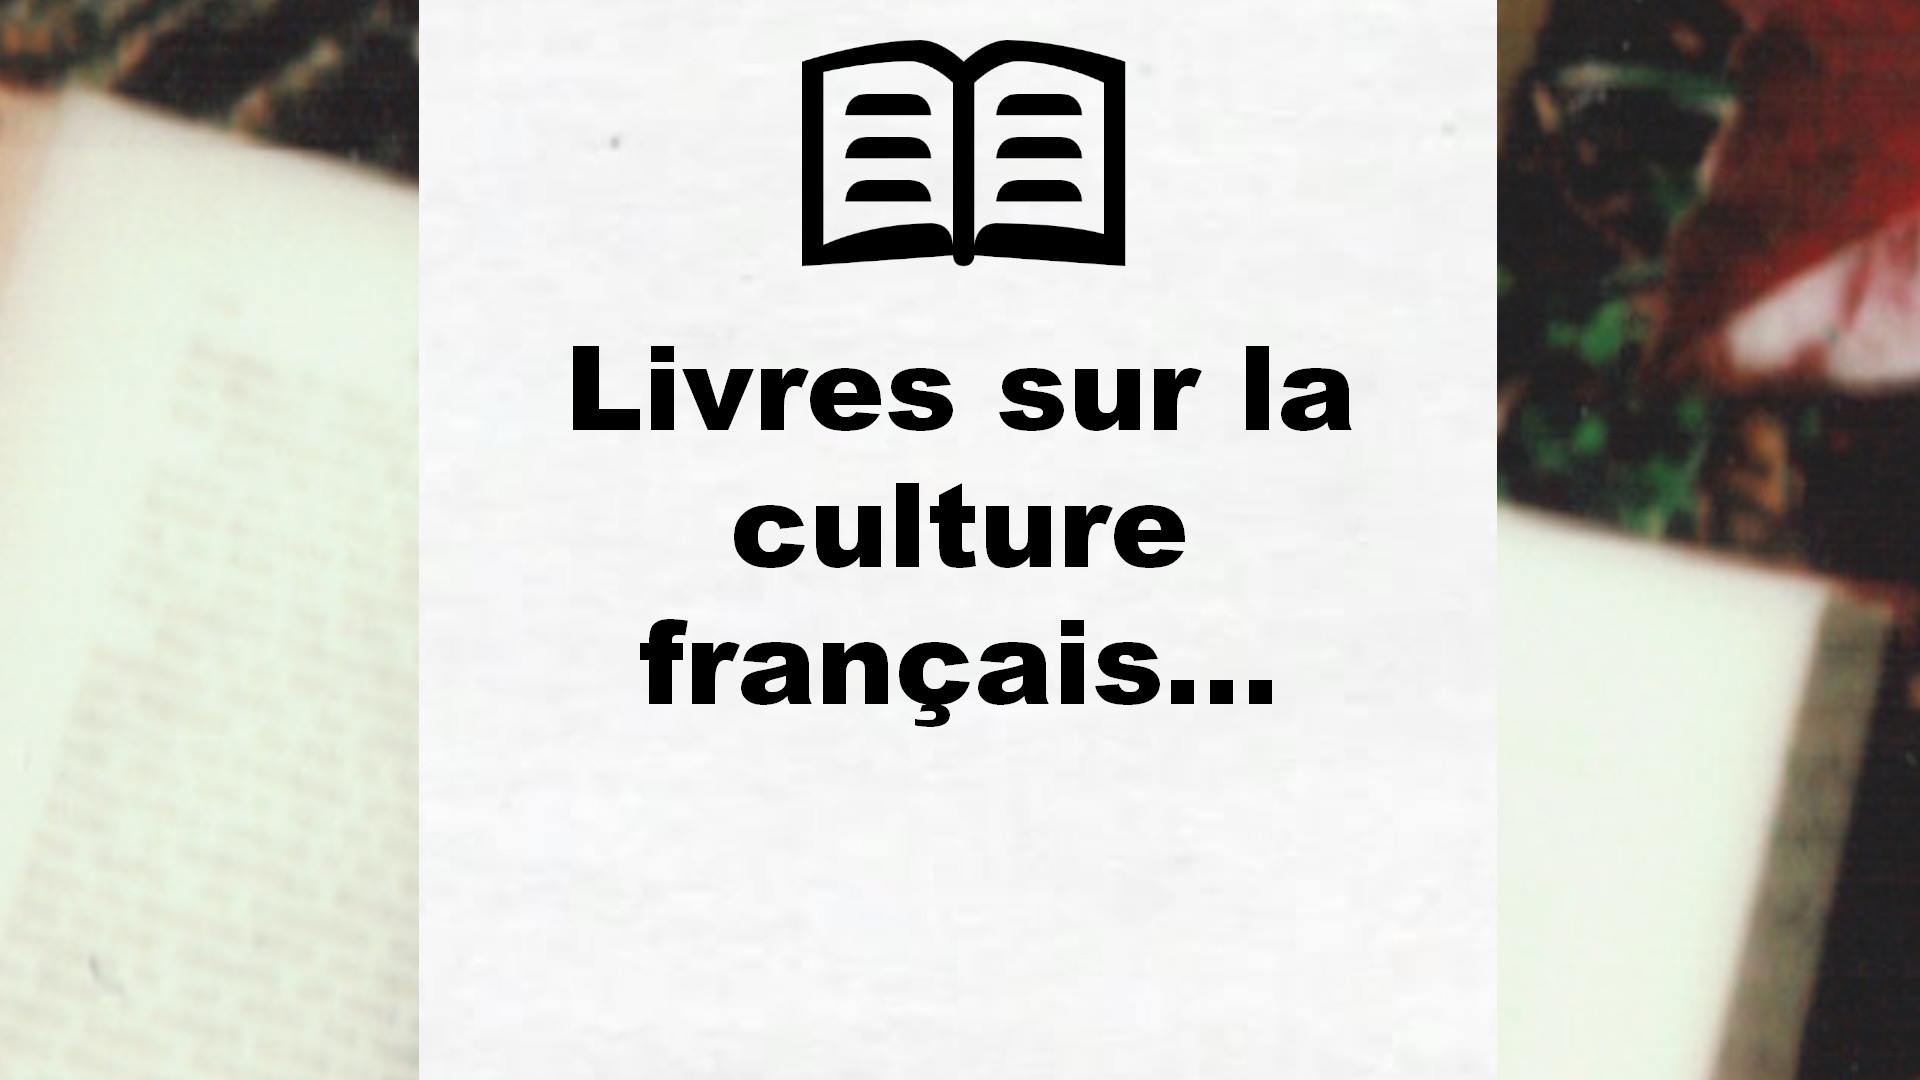 Livres sur la culture française